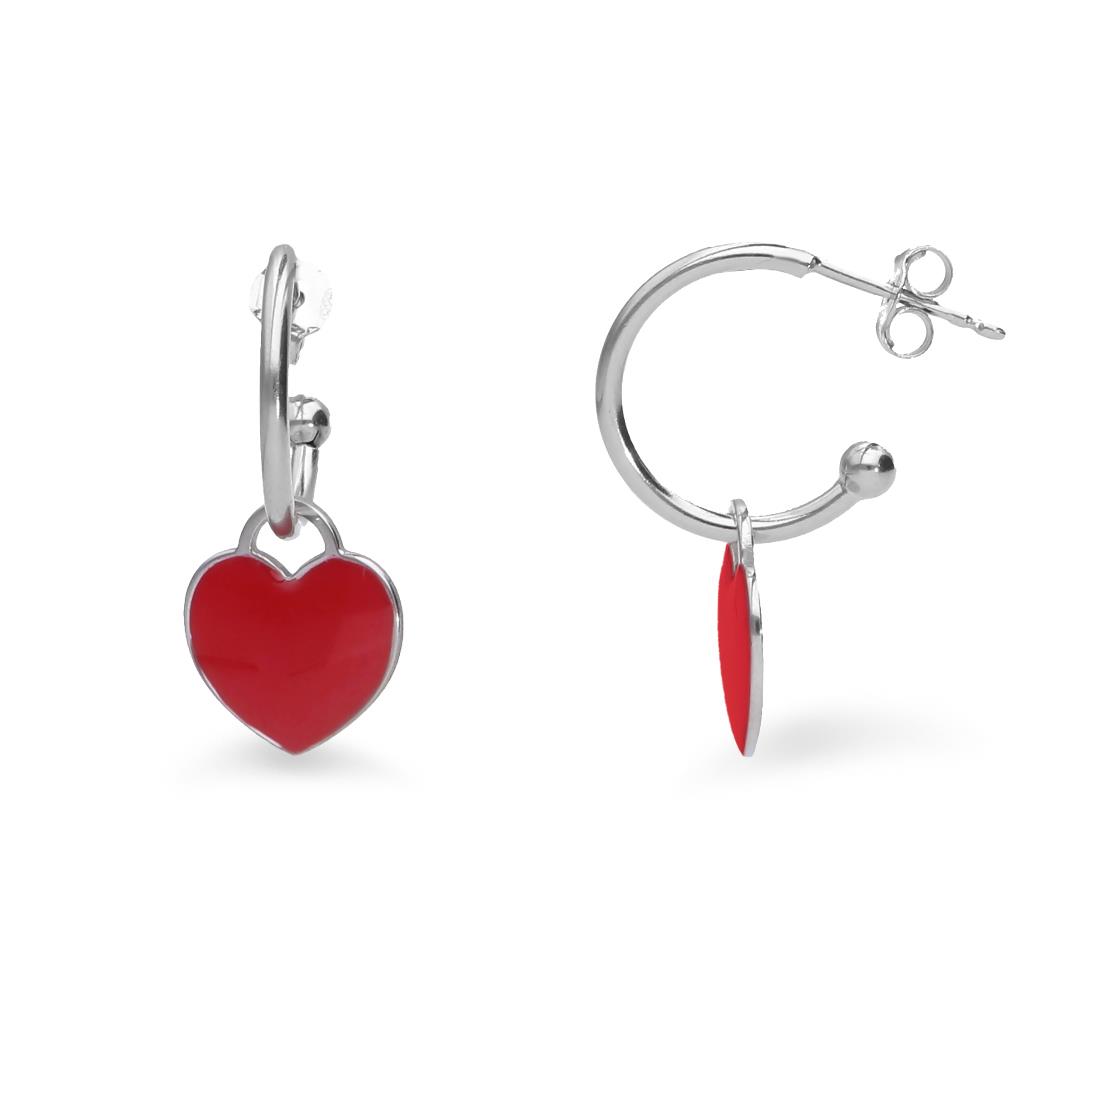 Silver hoop earrings with red heart - ALFIERI & ST. JOHN 925